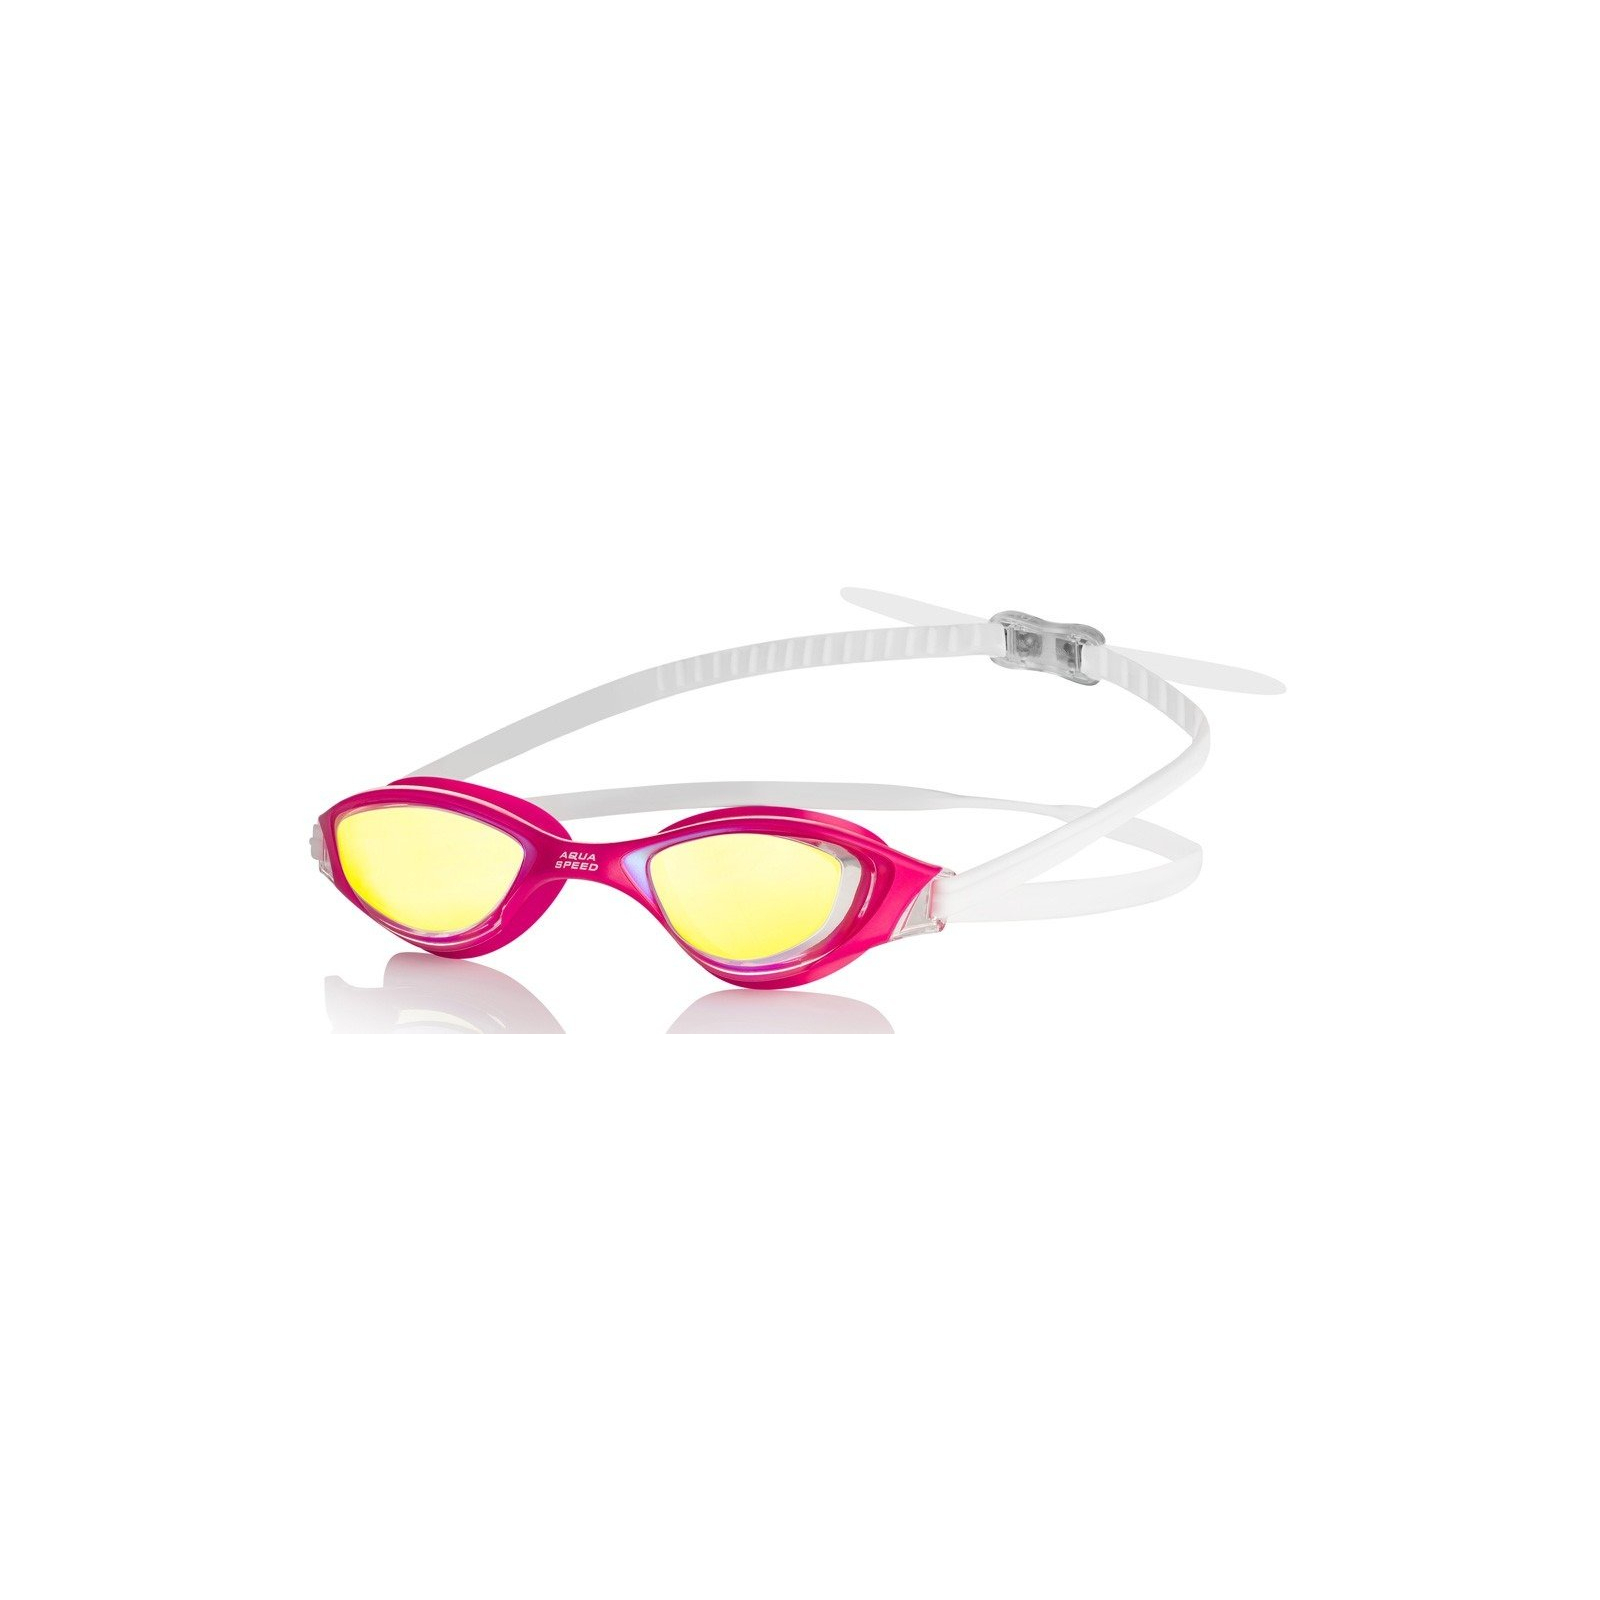 Окуляри для плавання Aqua Speed Xeno Mirror 195-03 6997 рожевий, білий OSFM (5908217669971)